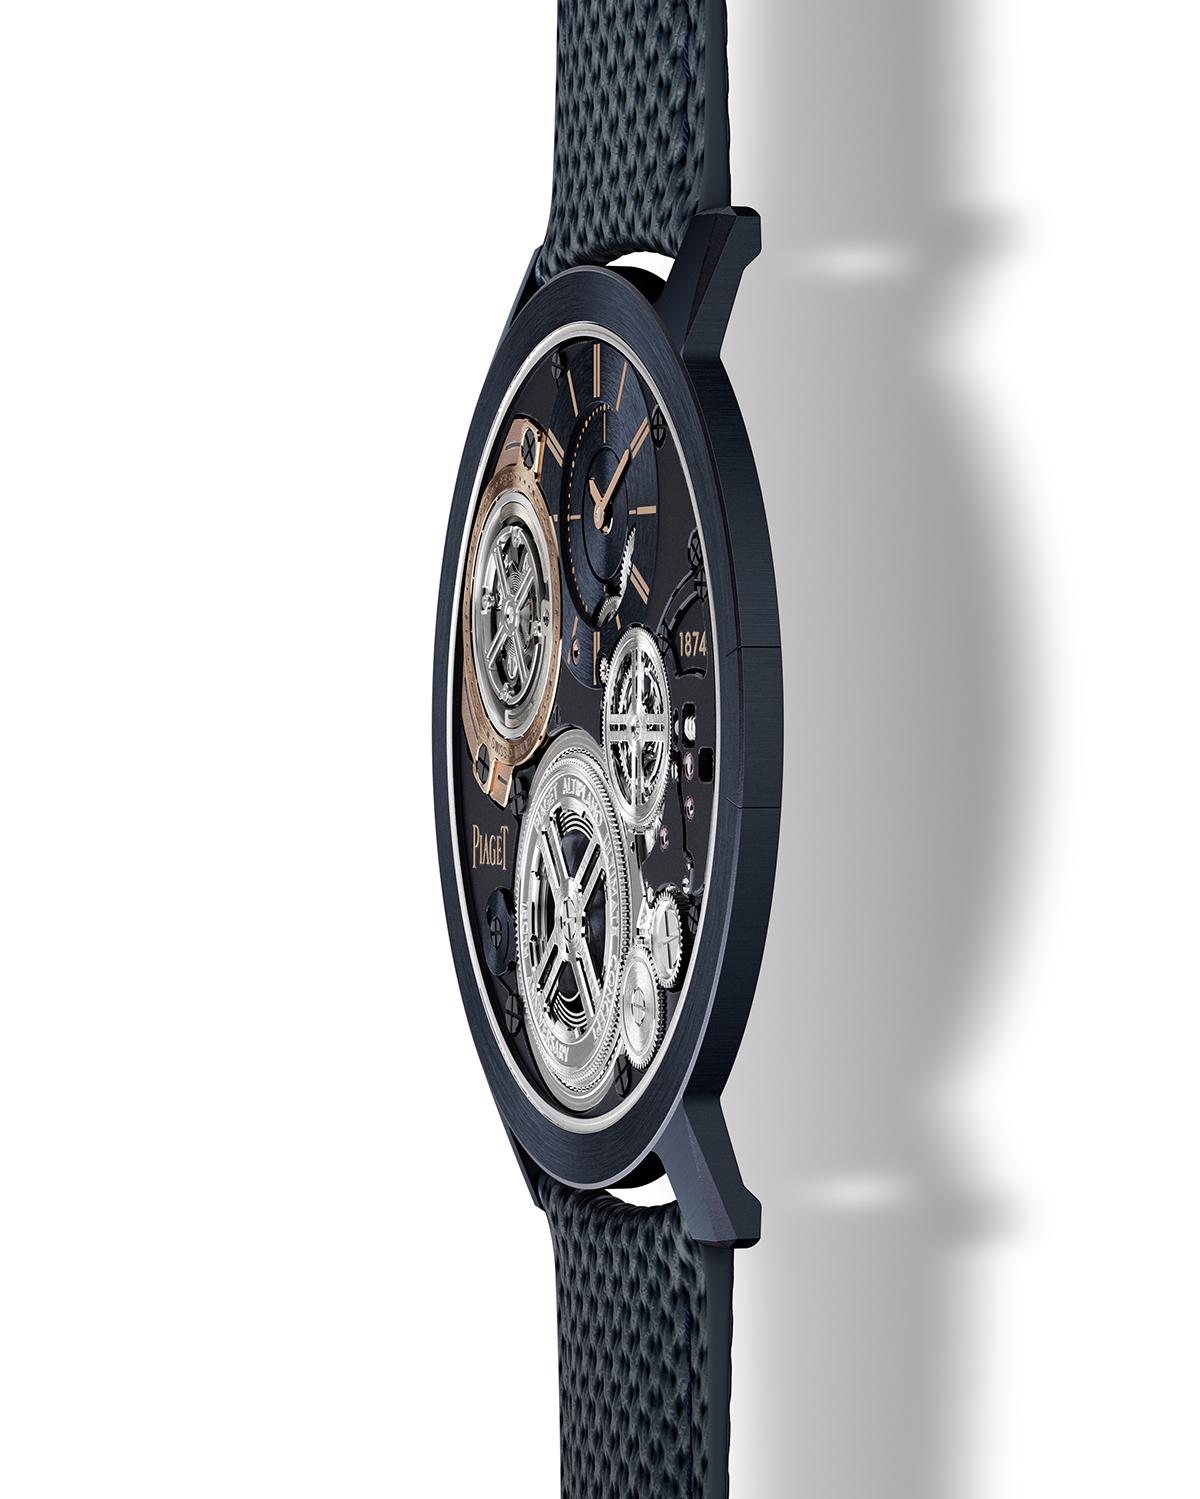 Piaget A.U.C Tourbillon: Giới hạn nào cho đồng hồ đeo tay? 13